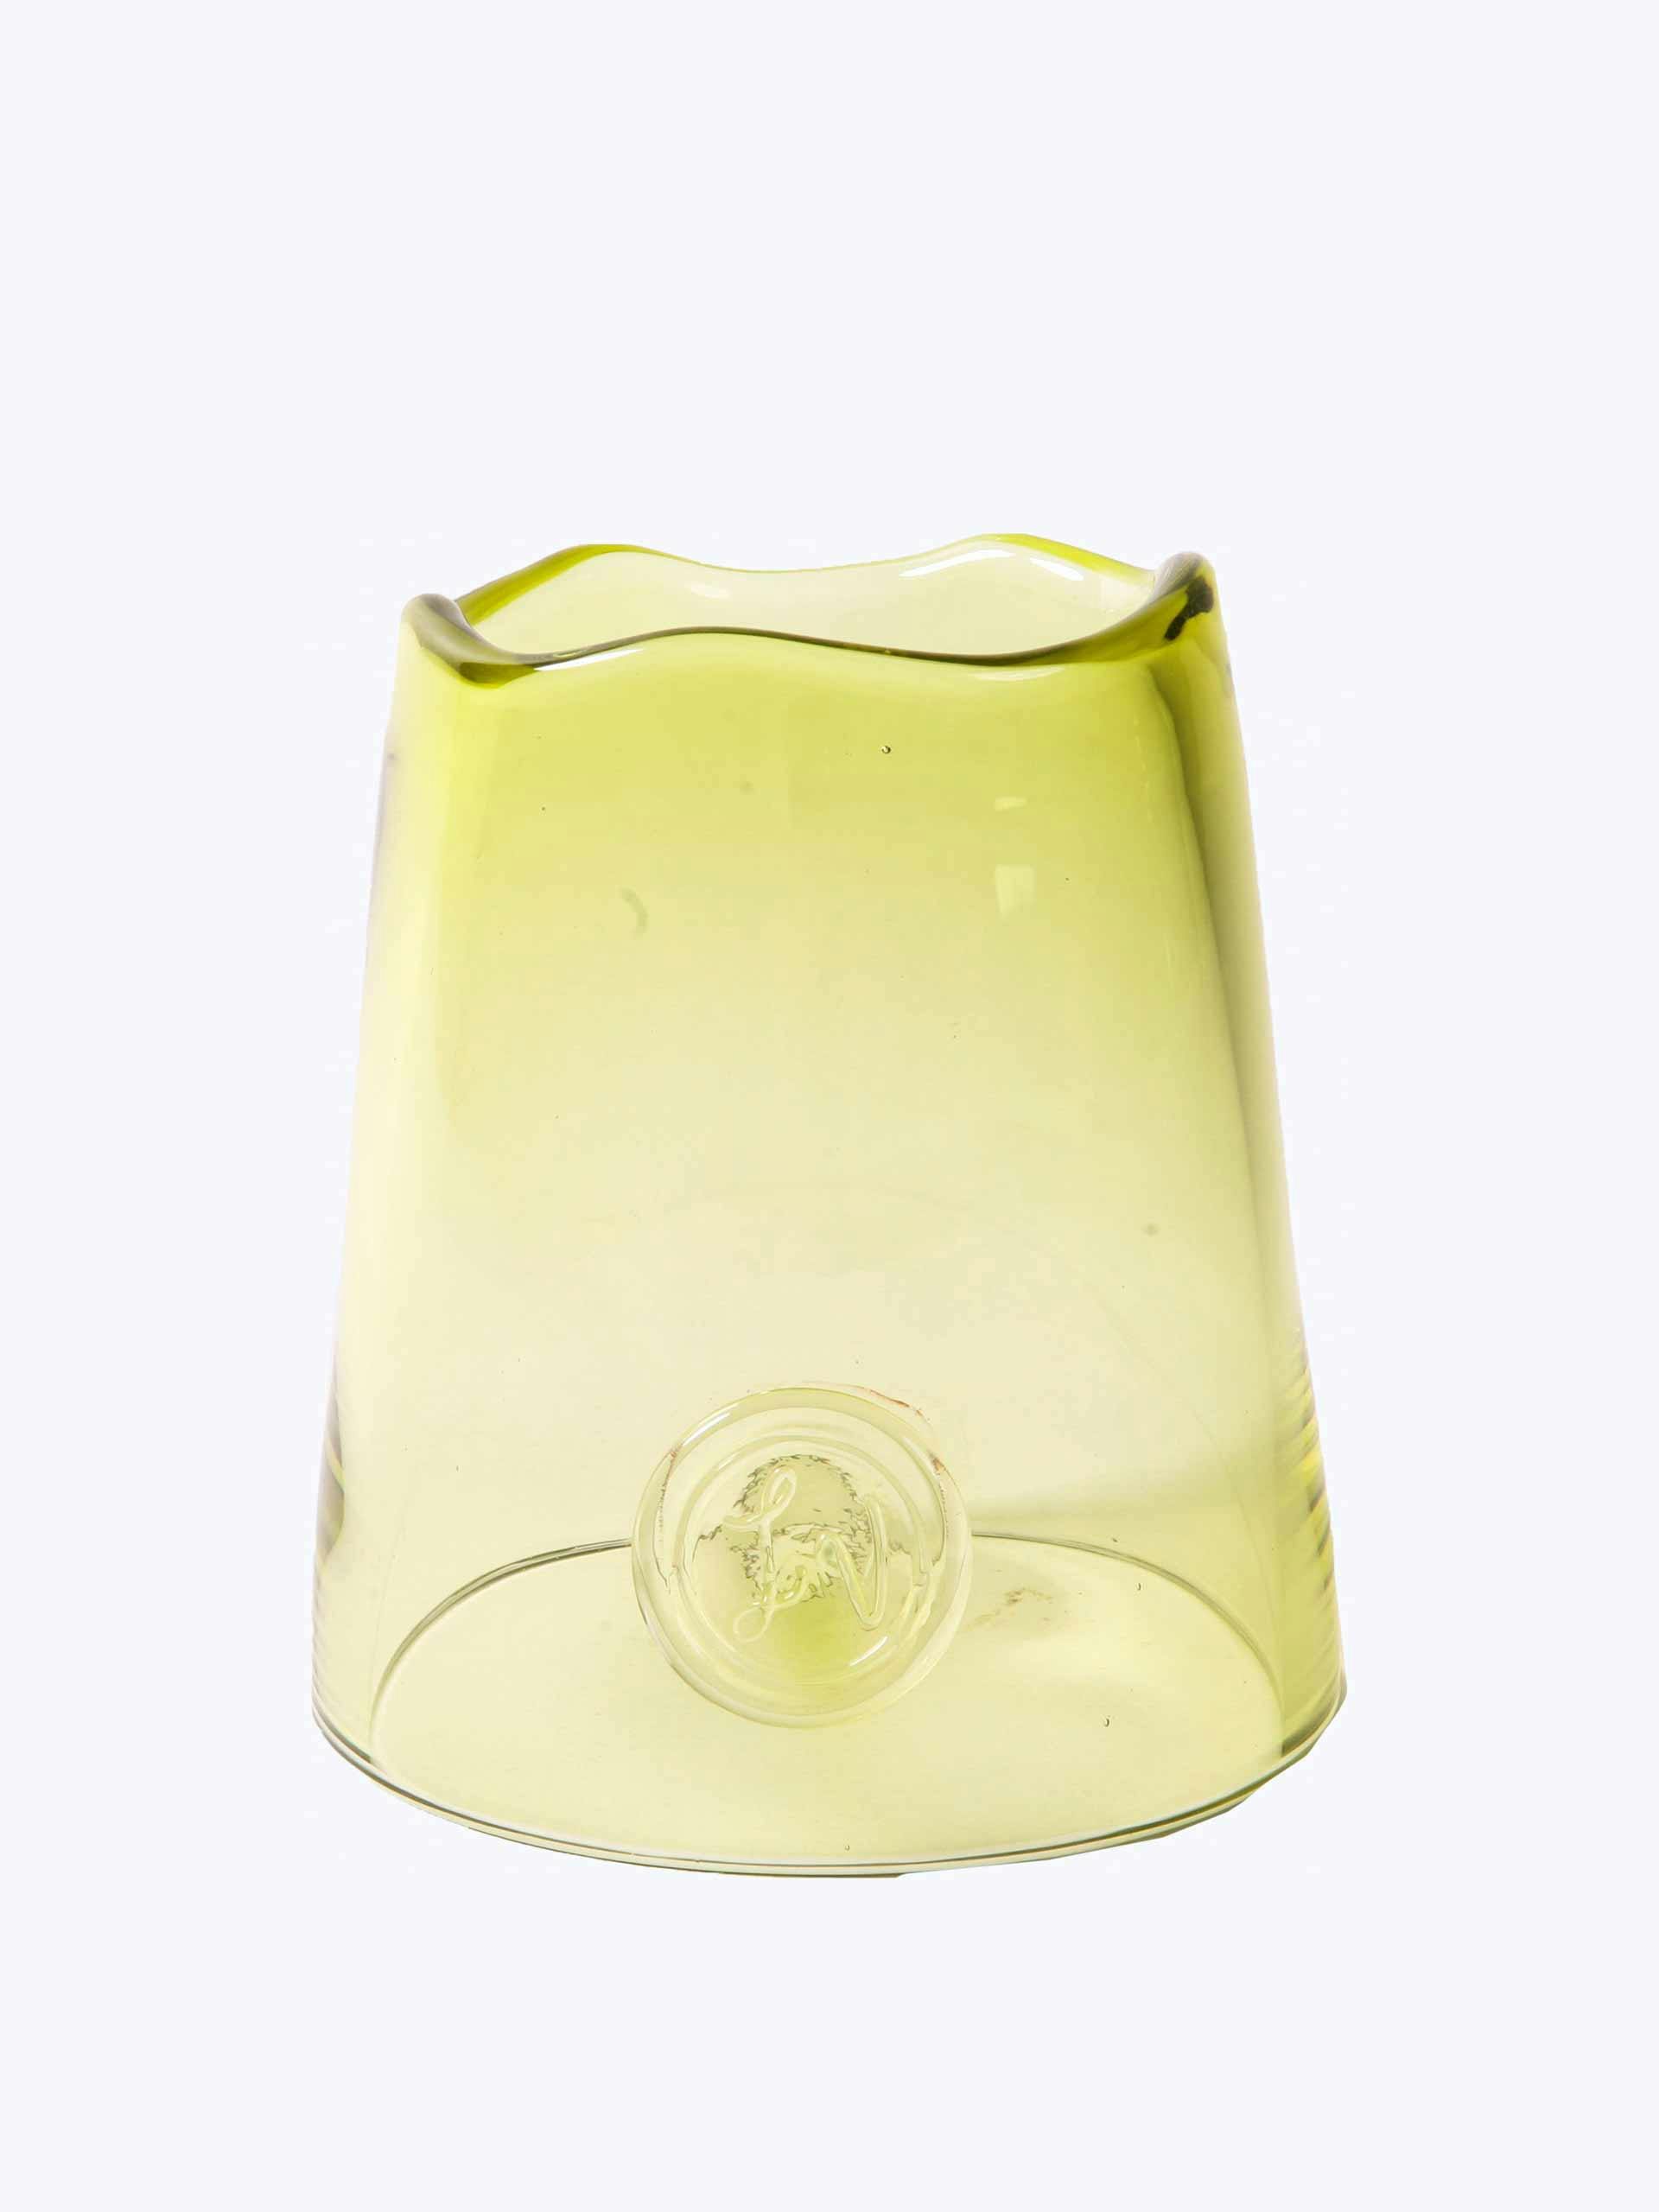 Olive glass cloche